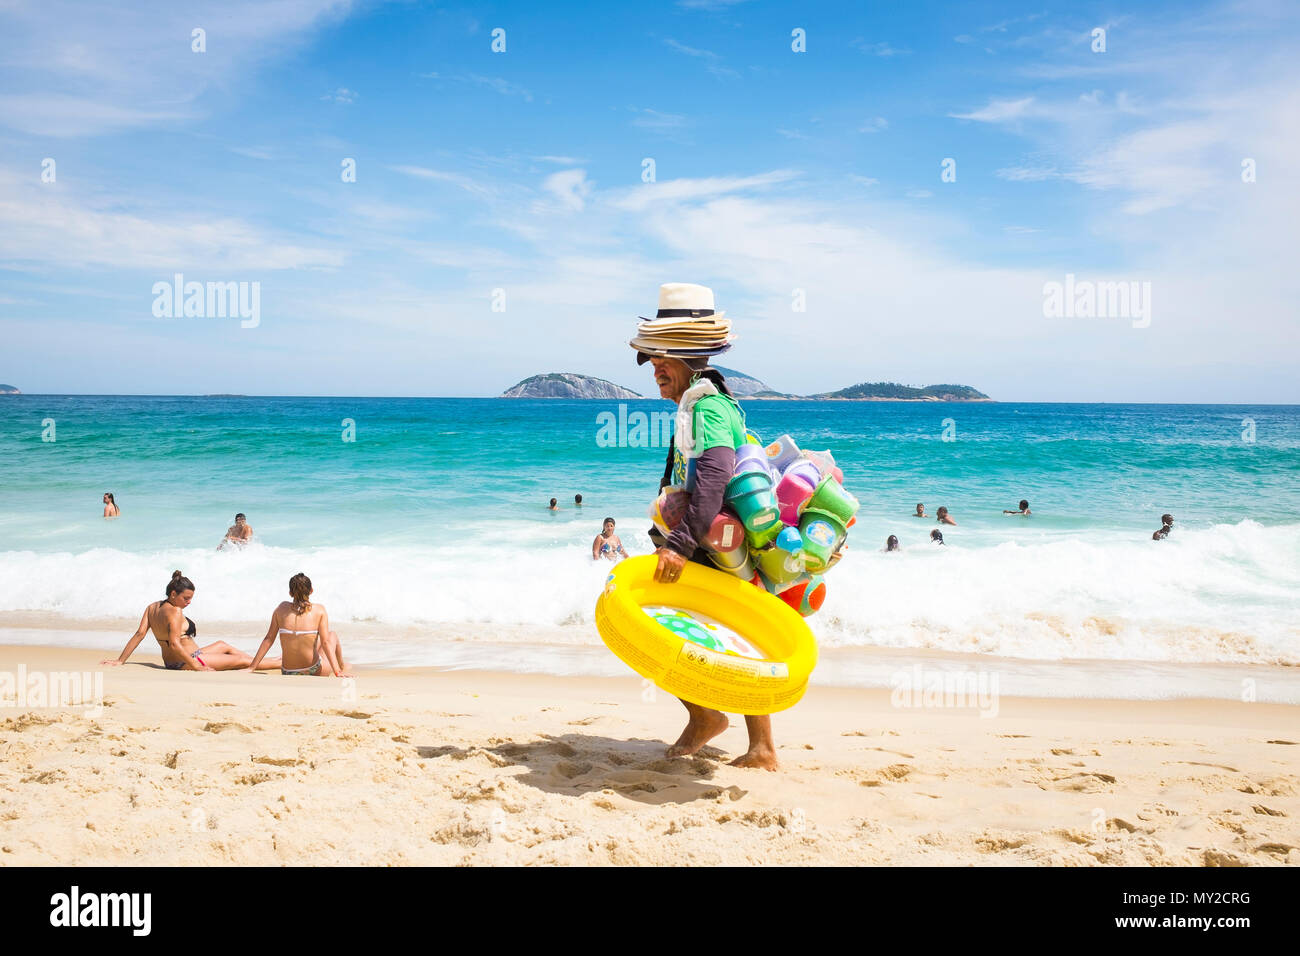 RIO DE JANEIRO, Brésil - circa 2017, février : Vendeur de plage de plage multicolores vente jouets et jeux gonflables transporte ses marchandises le long de la plage d'Ipanema. Banque D'Images